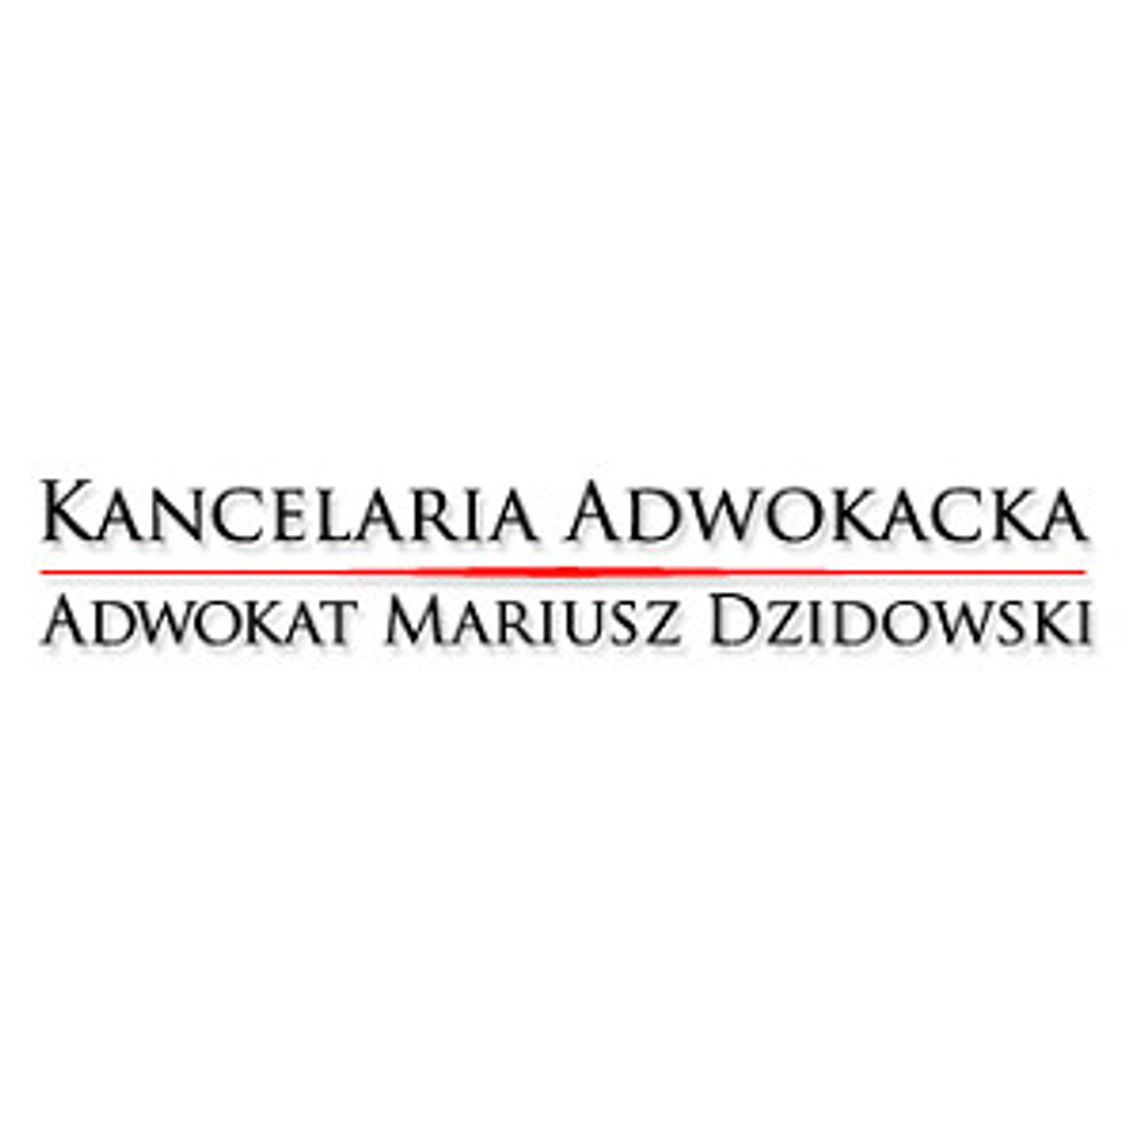 Rejestracja i Obsługa Spółek Warszawa, Legionowo - Adwokat Mariusz Dzidowski